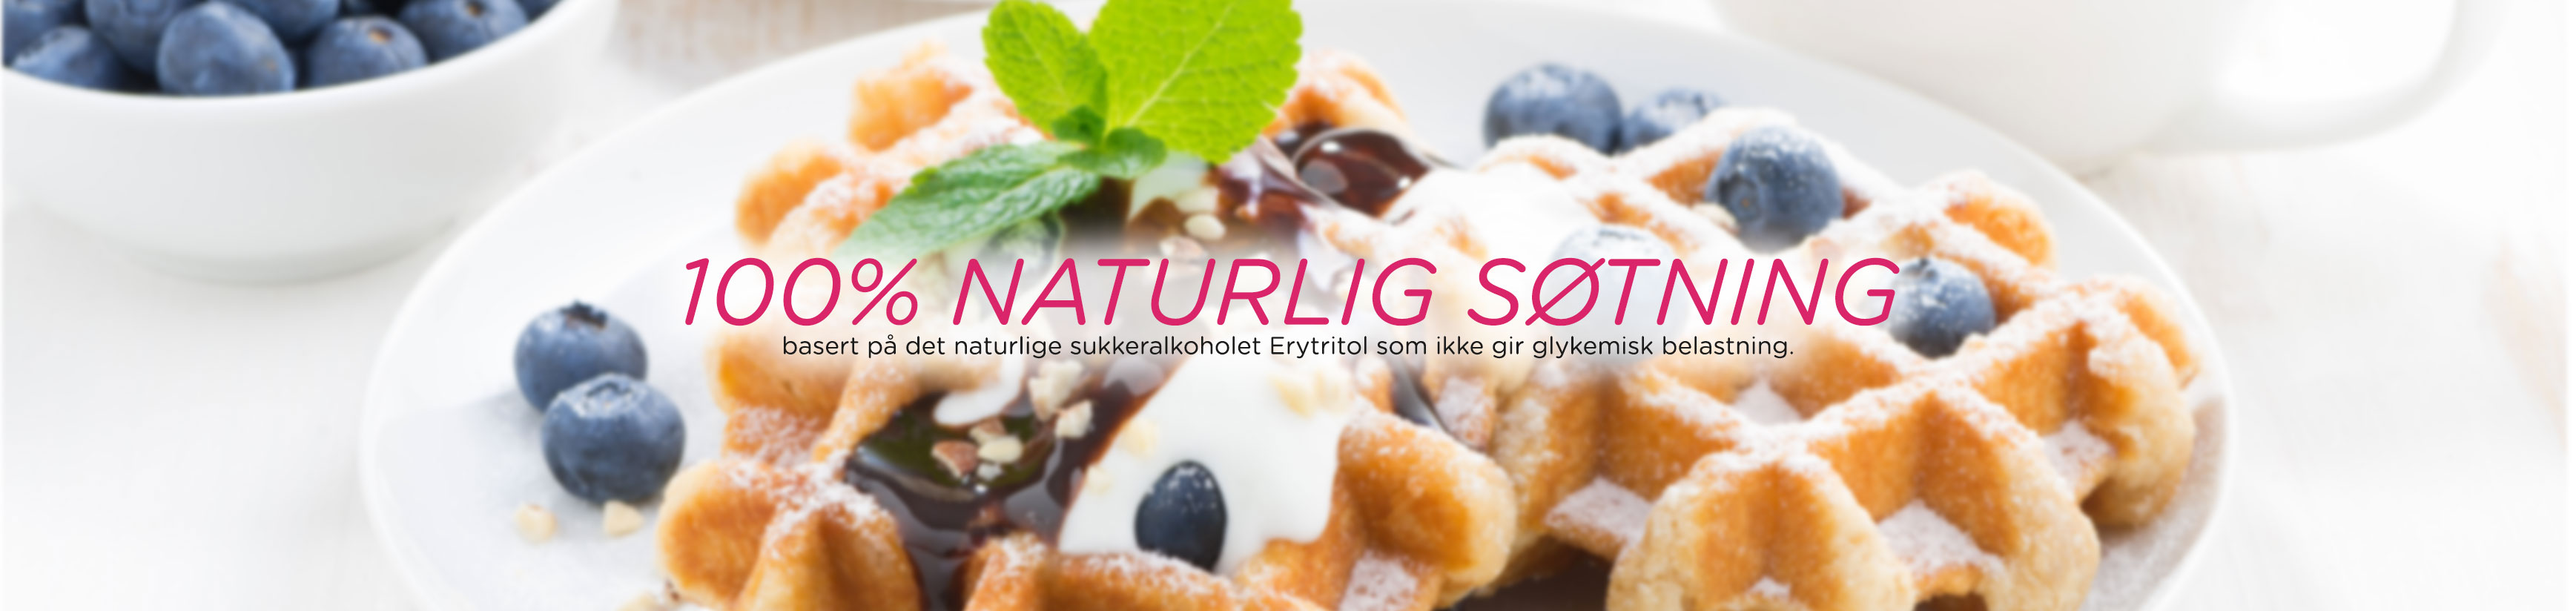 100% naturlig søtning basert på det naturlige sukkeralkoholet Erytritol som ikke gir glykemisk belastning.